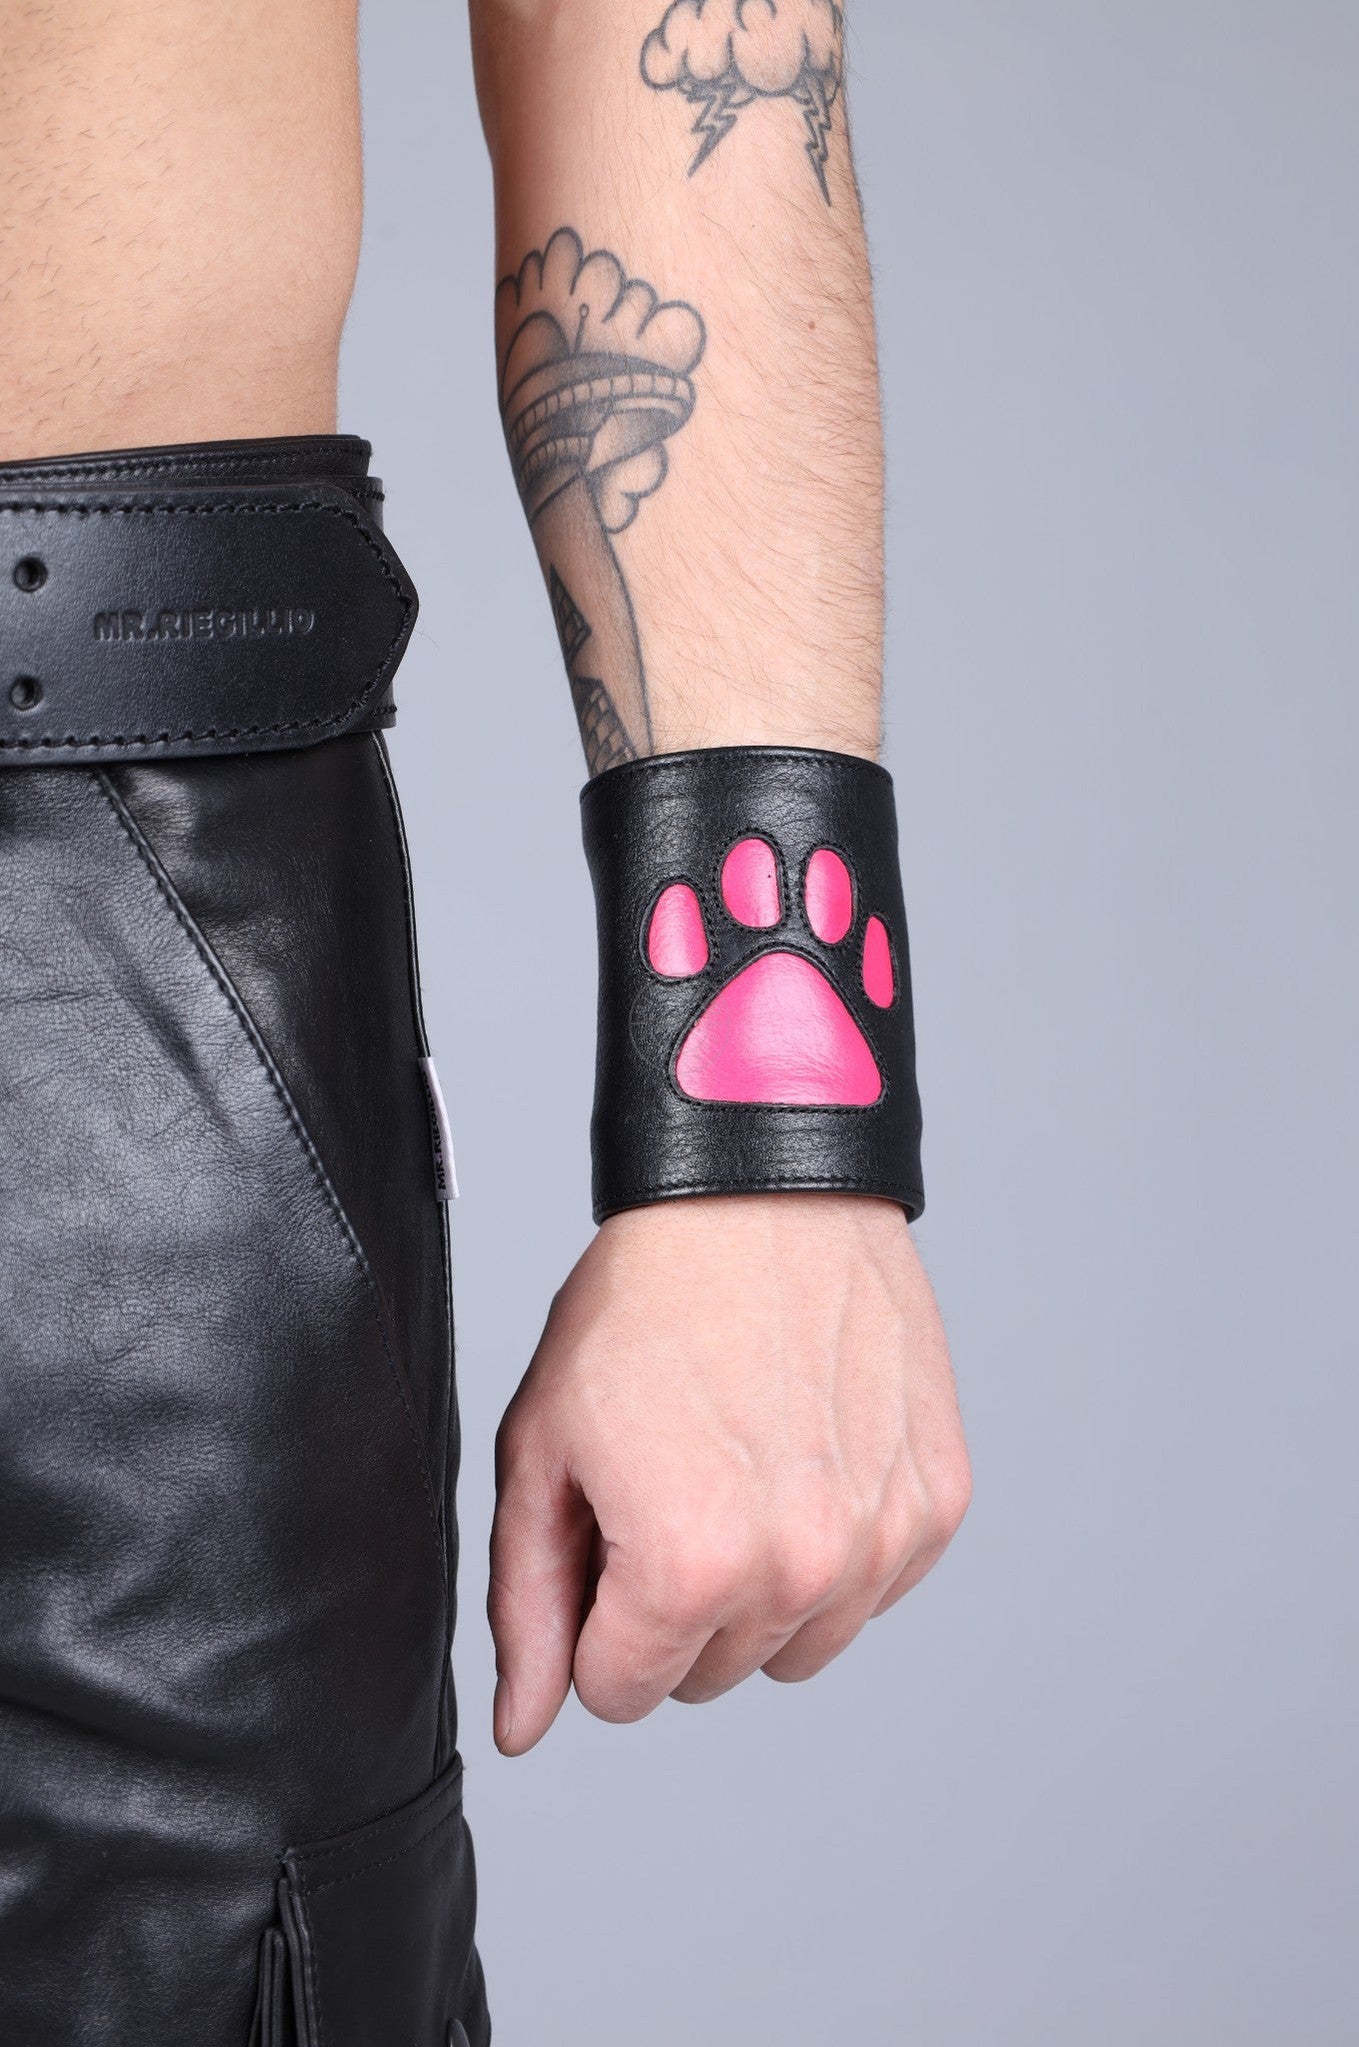 Black Leather Puppy Wrist Wallet - Pink at MR. Riegillio